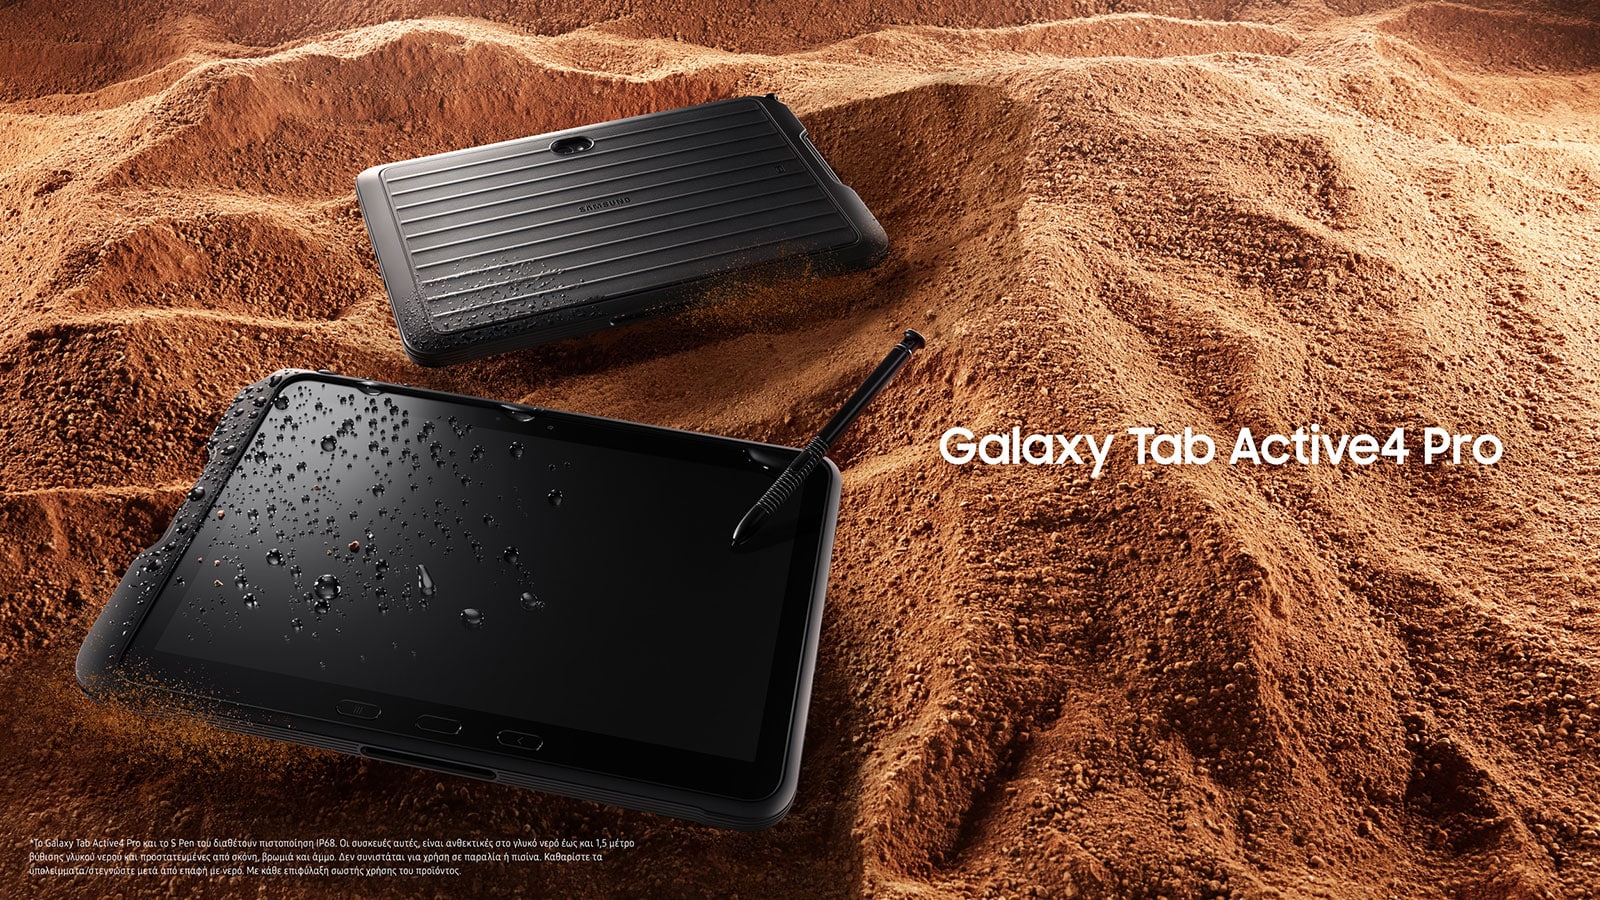 Galaxy Tab Active4 Pro, Galaxy Tab Active4 Pro: Είναι δυνατό και αντέχει!